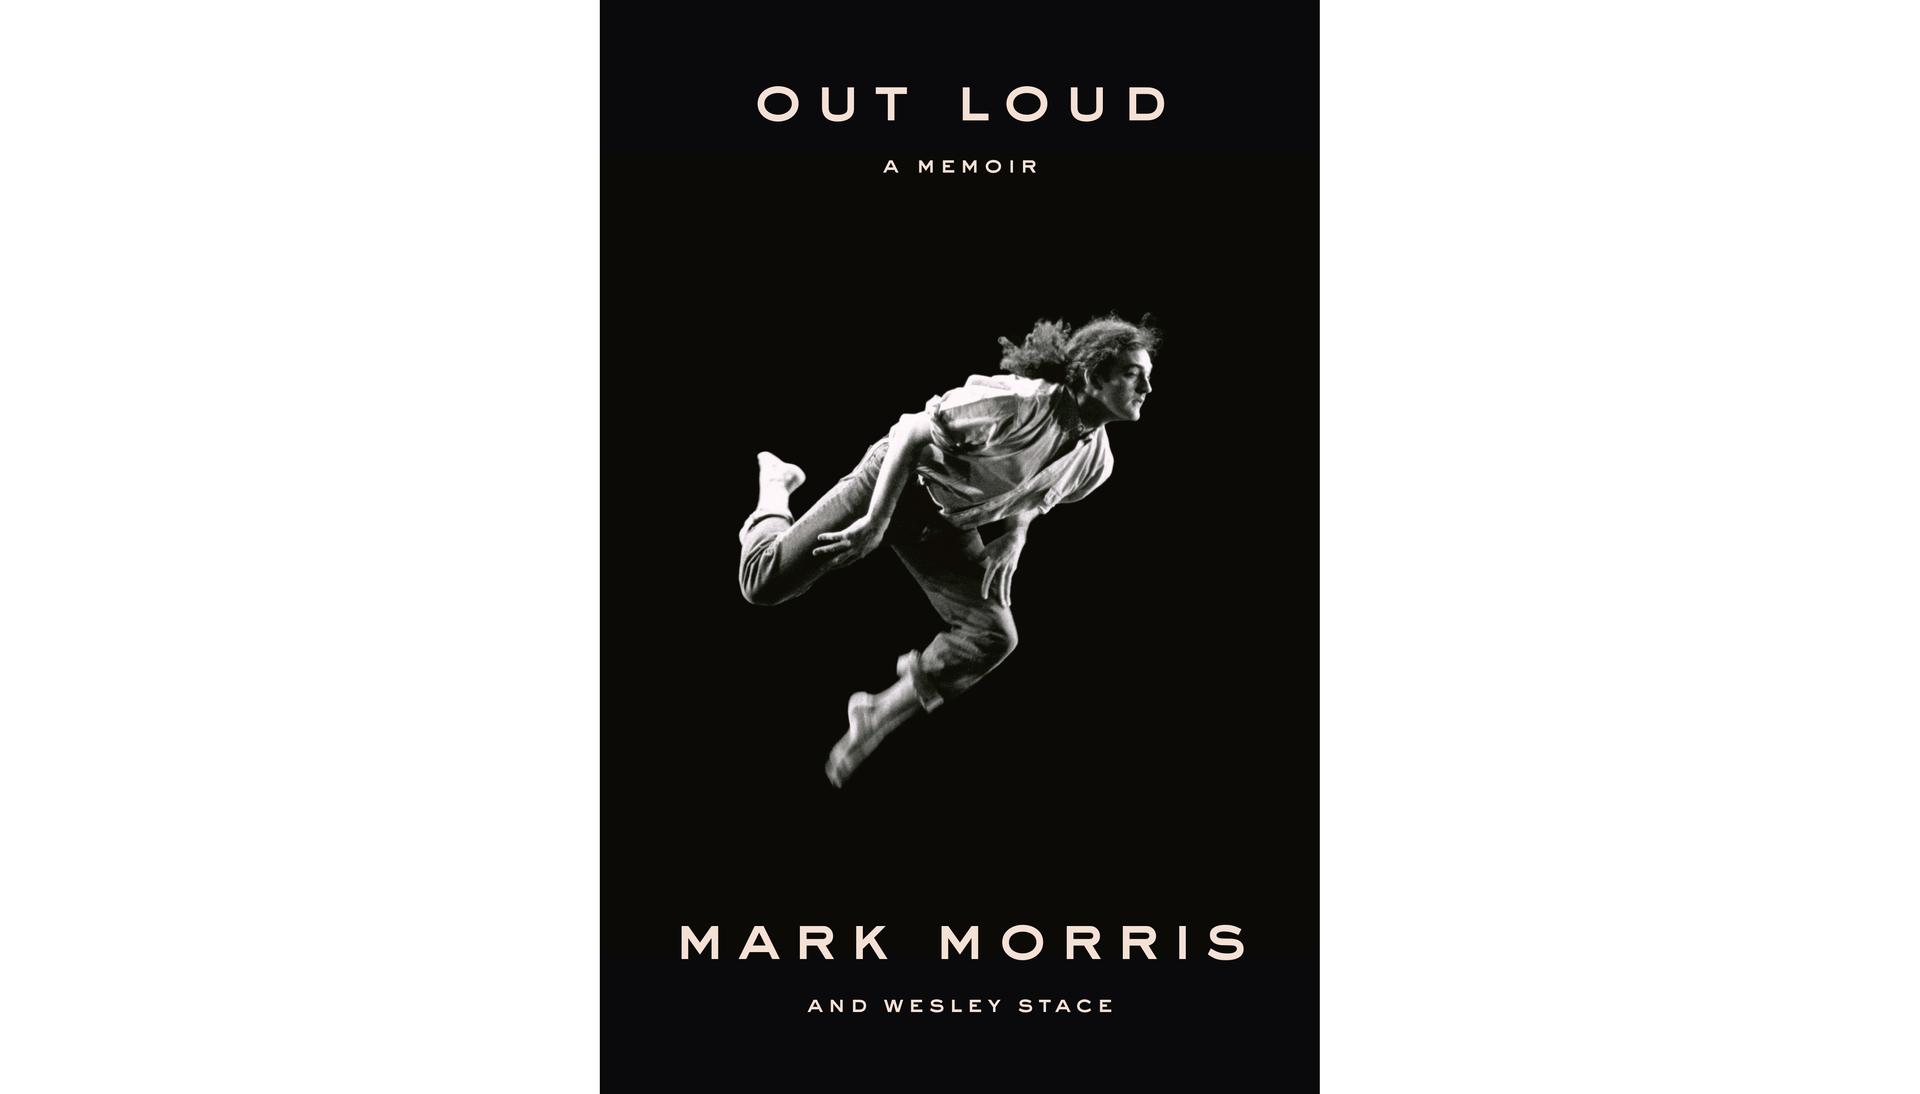 Mark Morris’ memoir “Out Loud.”